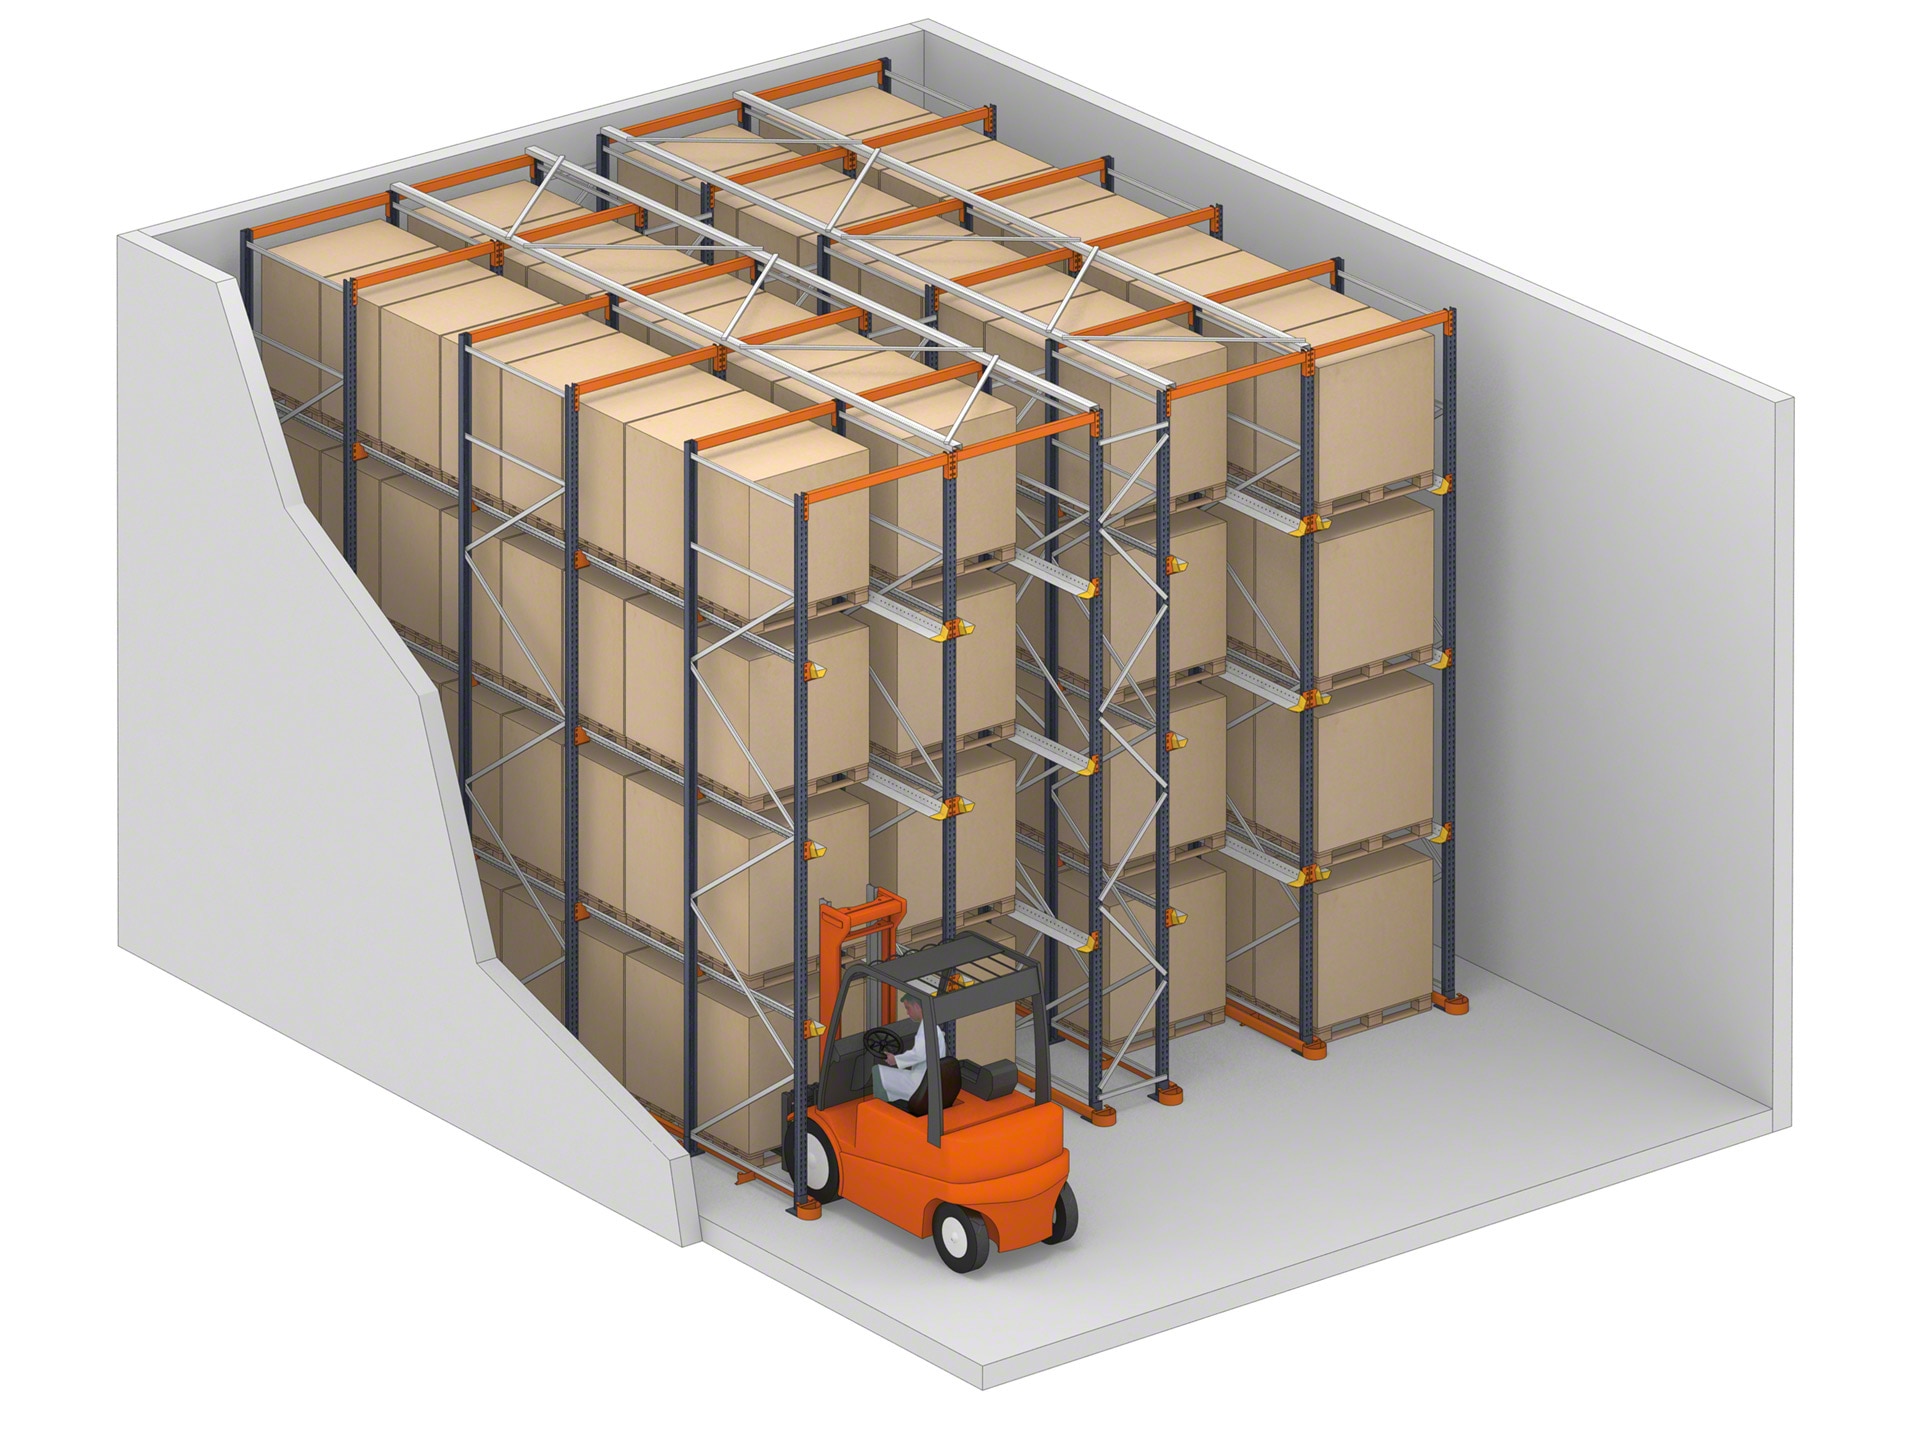 免下车系统是一种货架系统，叉车可以通过其存储通道进入货物